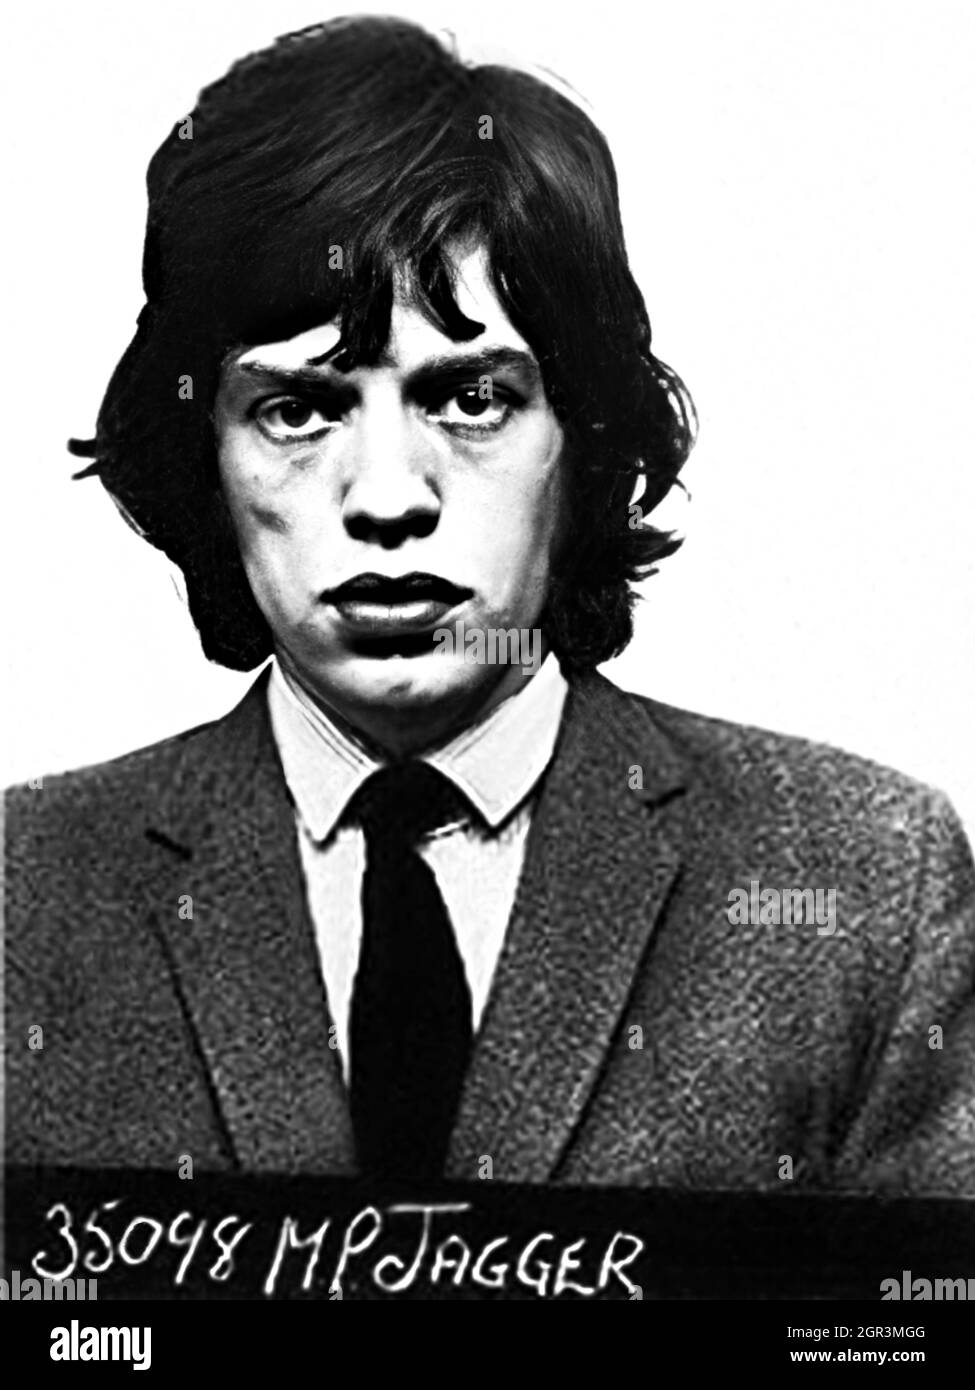 1967 , 12 février , Redlands, West Wittering , GRANDE-BRETAGNE : Le célèbre chanteur de rock britannique MICK JAGGER ( Sir Michael Philip Jagger , né le 26 juillet 1943 ), membre du groupe ROLLING STONES , quand a été arrêté par la police pour usage de drogue lors d'une fête au domicile du guitariste Keith Richards. Photo officielle de la police , photographe inconnu . - Mug sghot - MUG-SHOT - HISTOIRE - FOTO STORICHE - MUSIQUE - MUSICA - cantante - COMPOSIORE - ROCK STAR - ROCKSTAR - ARRESTO - Arrestation - ARRESTATO DALLA POLIZIA - FSEGNALTICA - mugshot - mug tourné - rebelle - ribelle - HISTOIRE - portrait de STORE - portrait de STORE - Banque D'Images